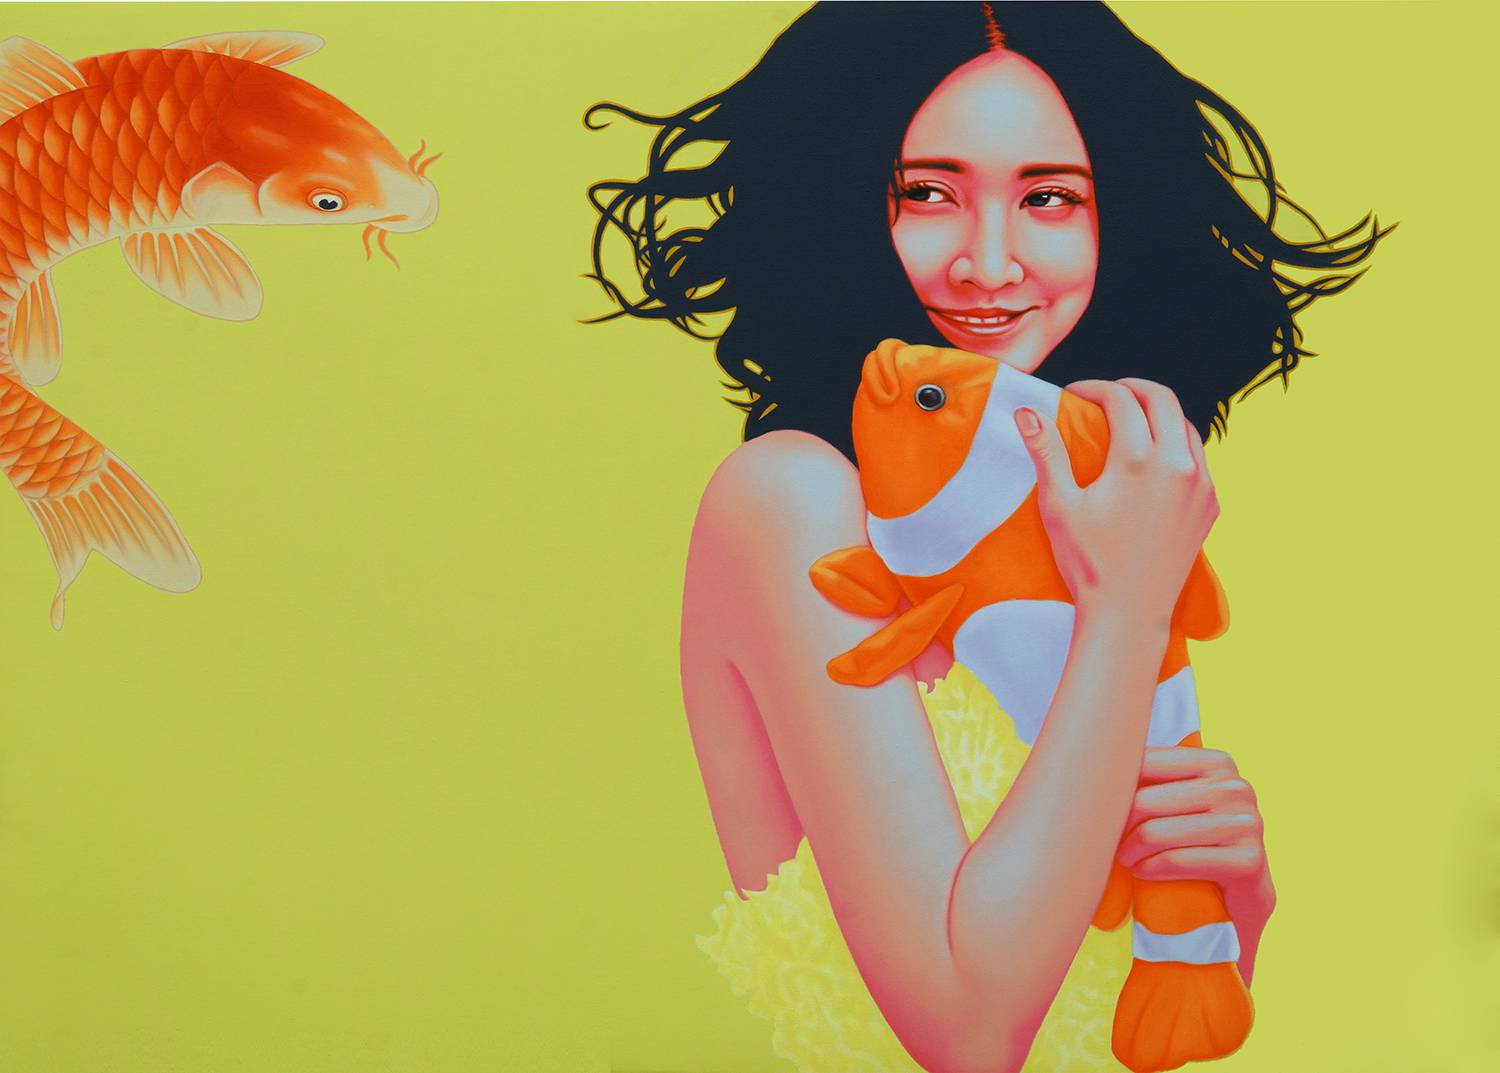 鱼.女孩 Fish Girl 100x130cm 布面油画 oil on canvas